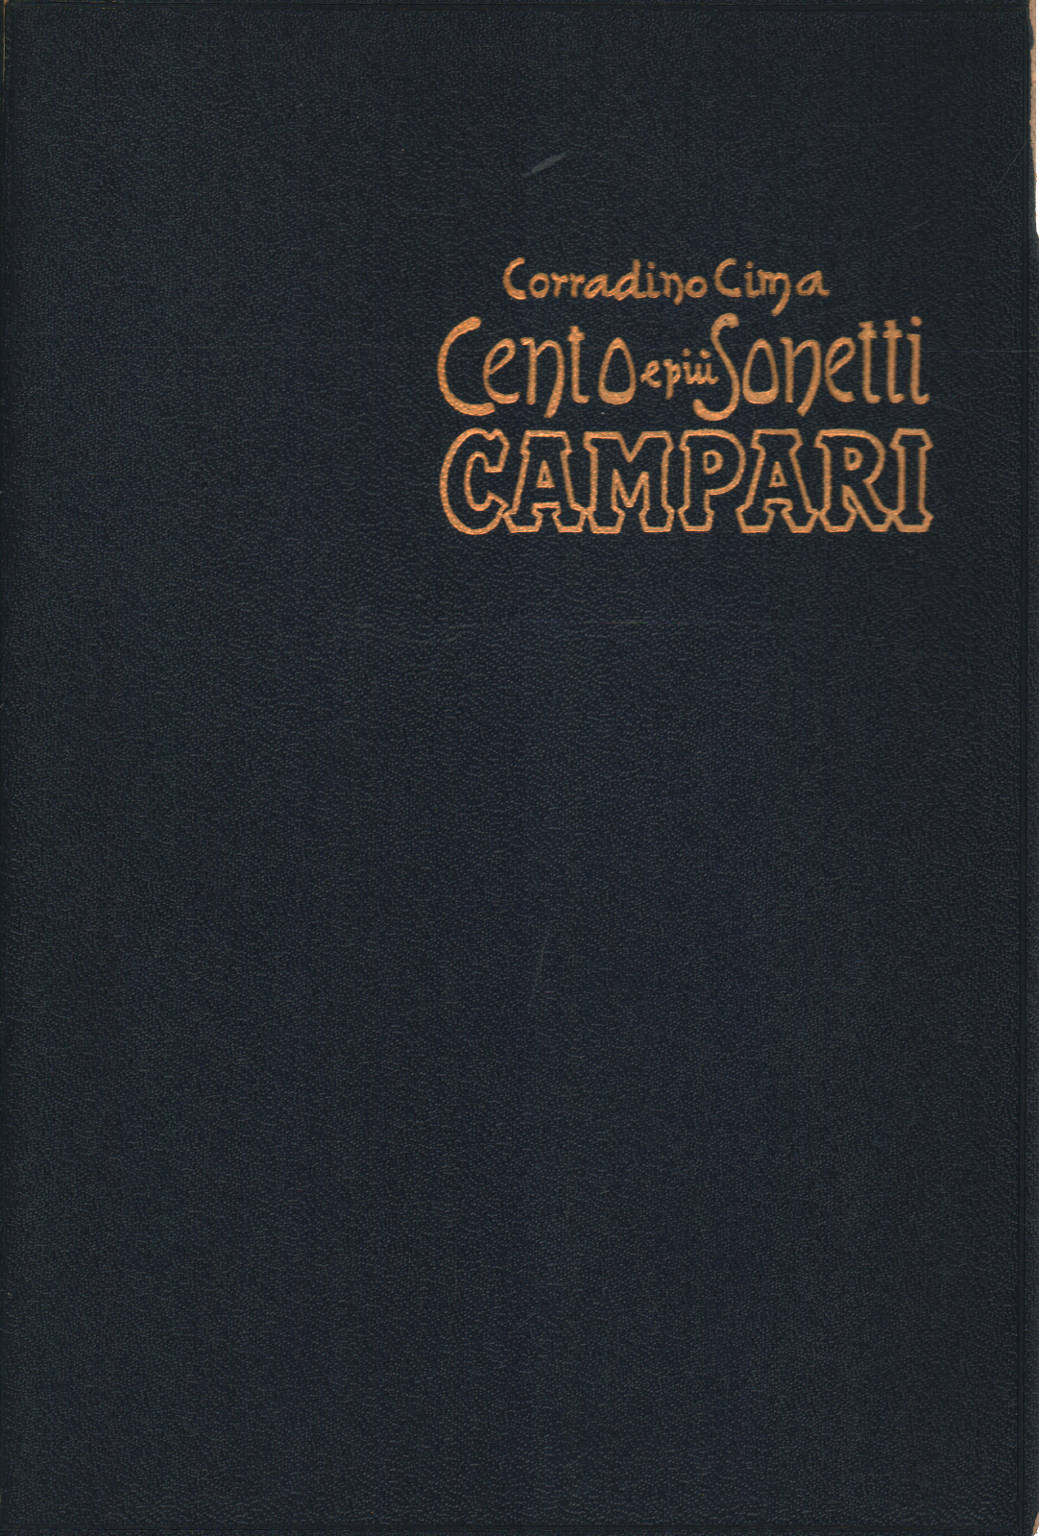 Cento e più sonetti Campari autografi di Corradin, Corradino Cima